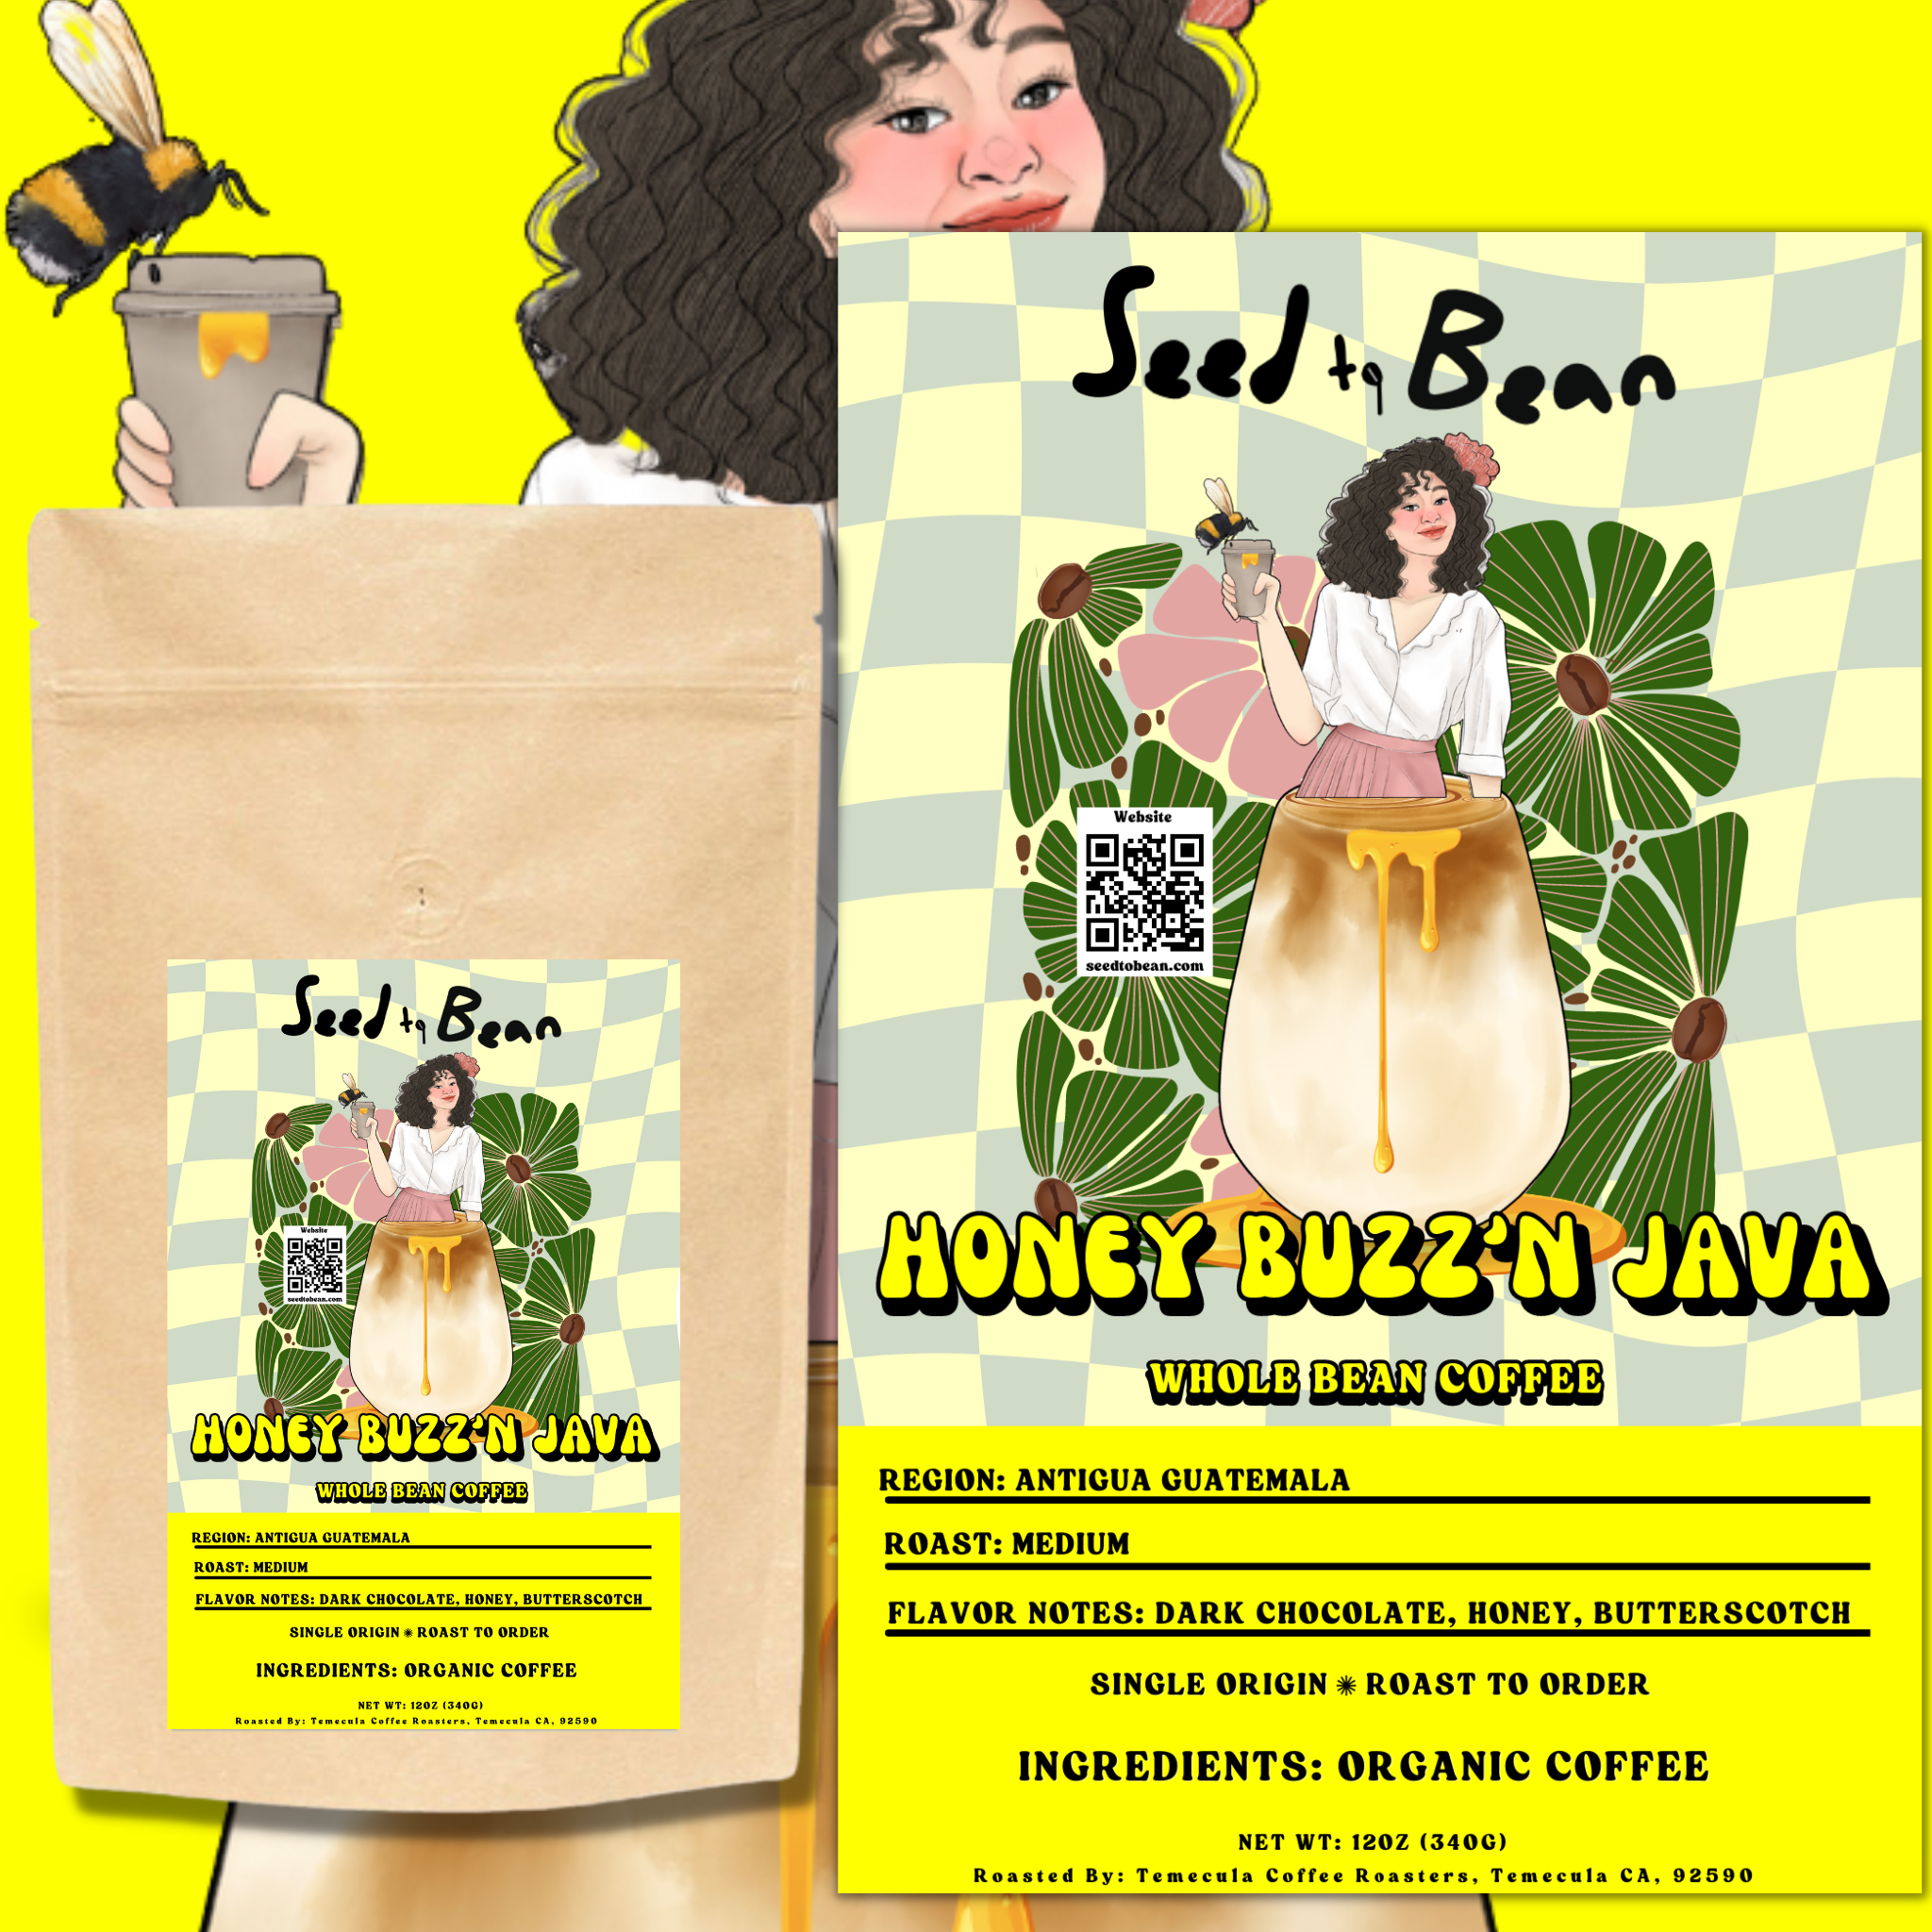 Honey Buzz'n Java